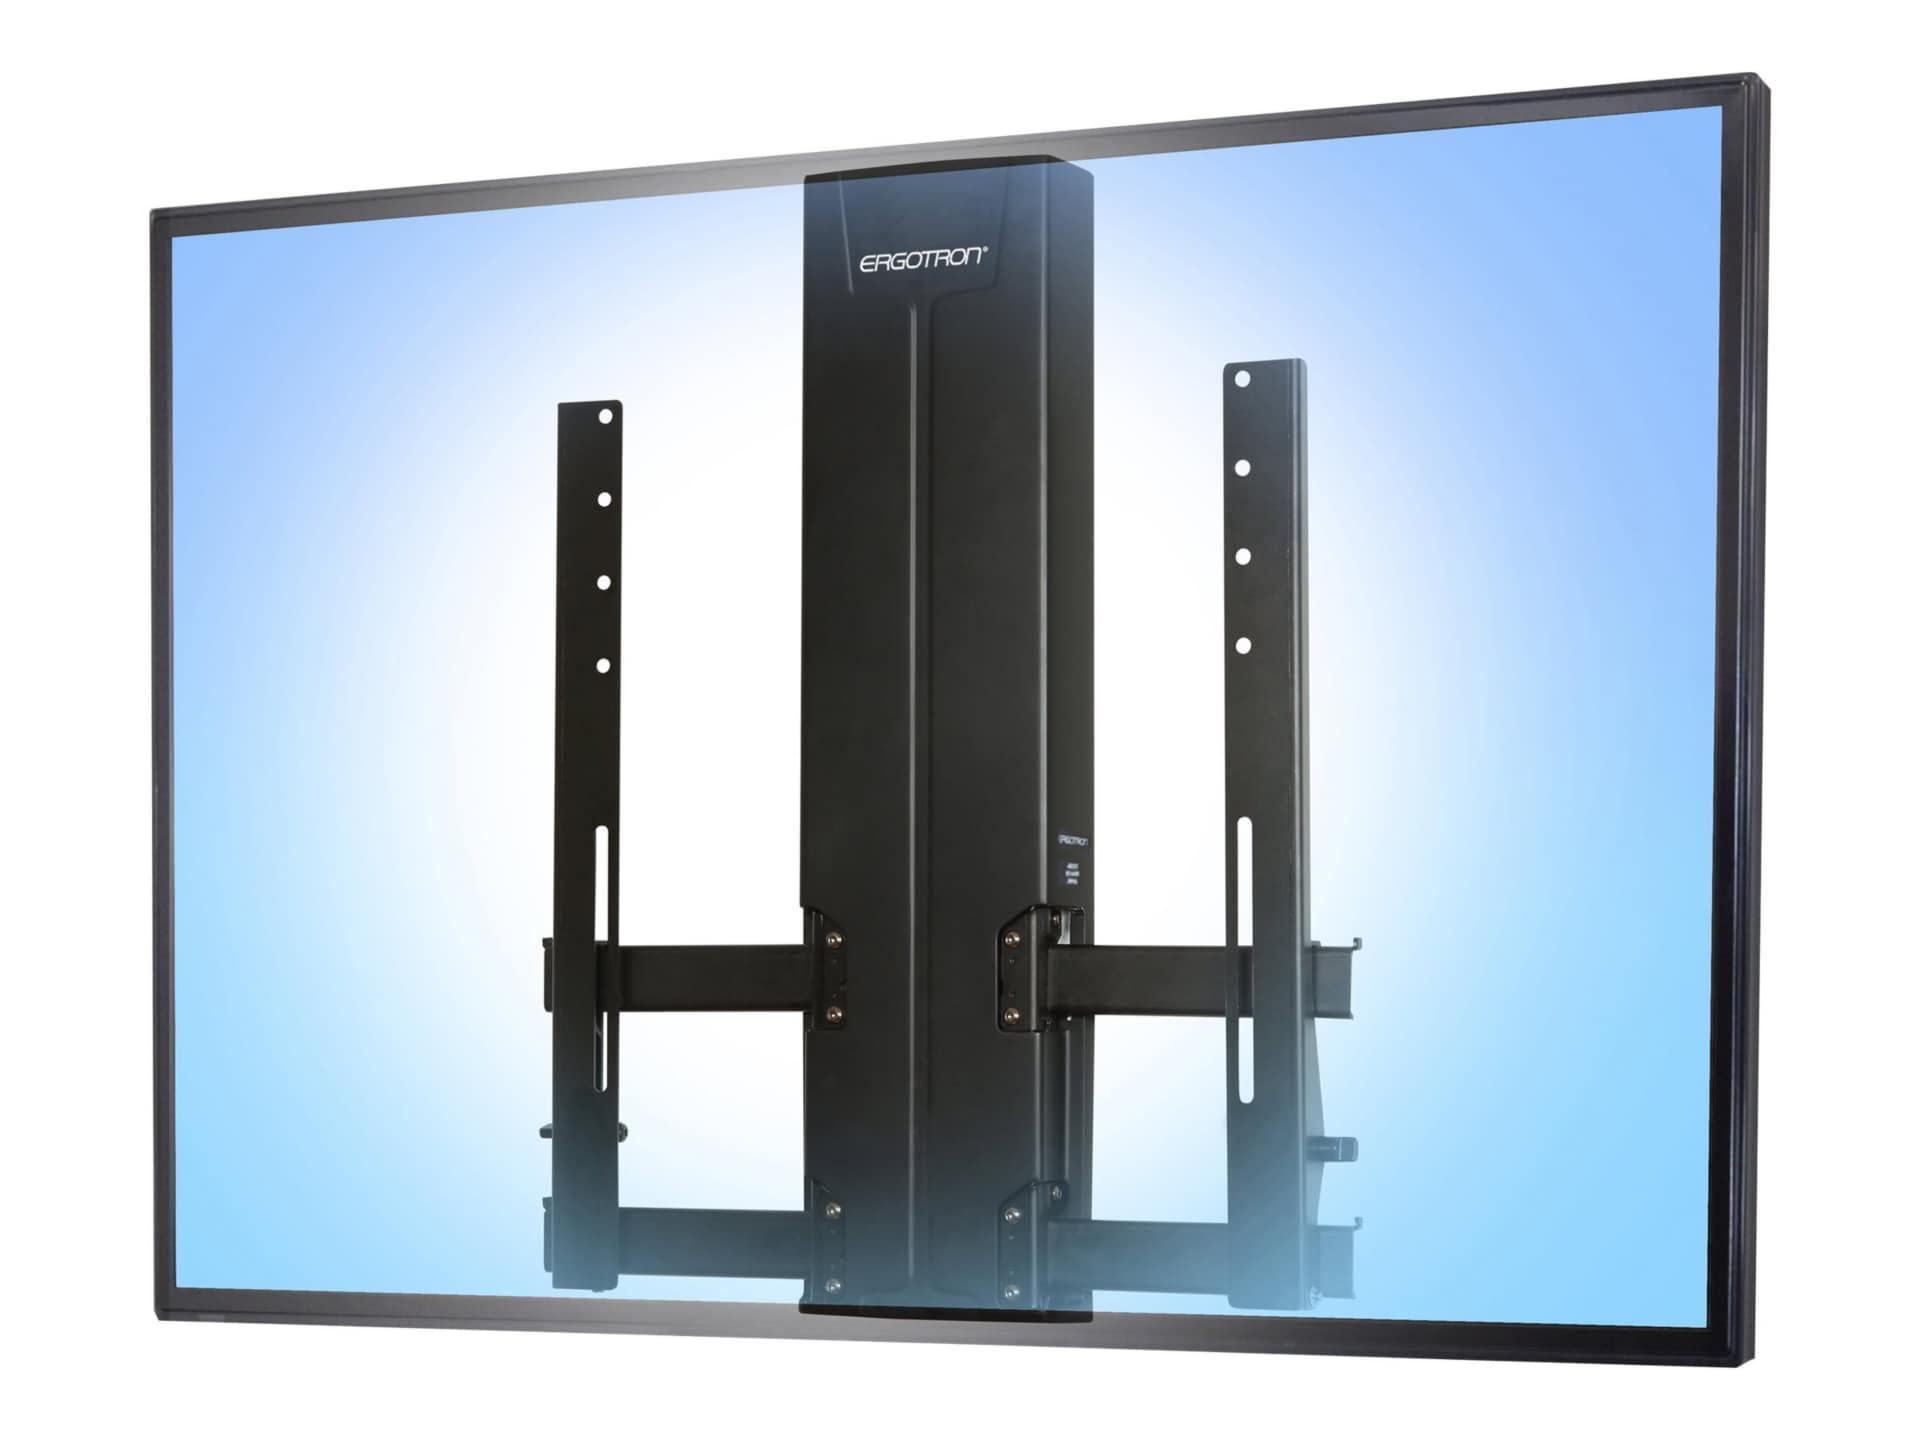 Ergotron kit de montage - glissement - pour Écran LCD - robuste (HD), réglable en haute - noir